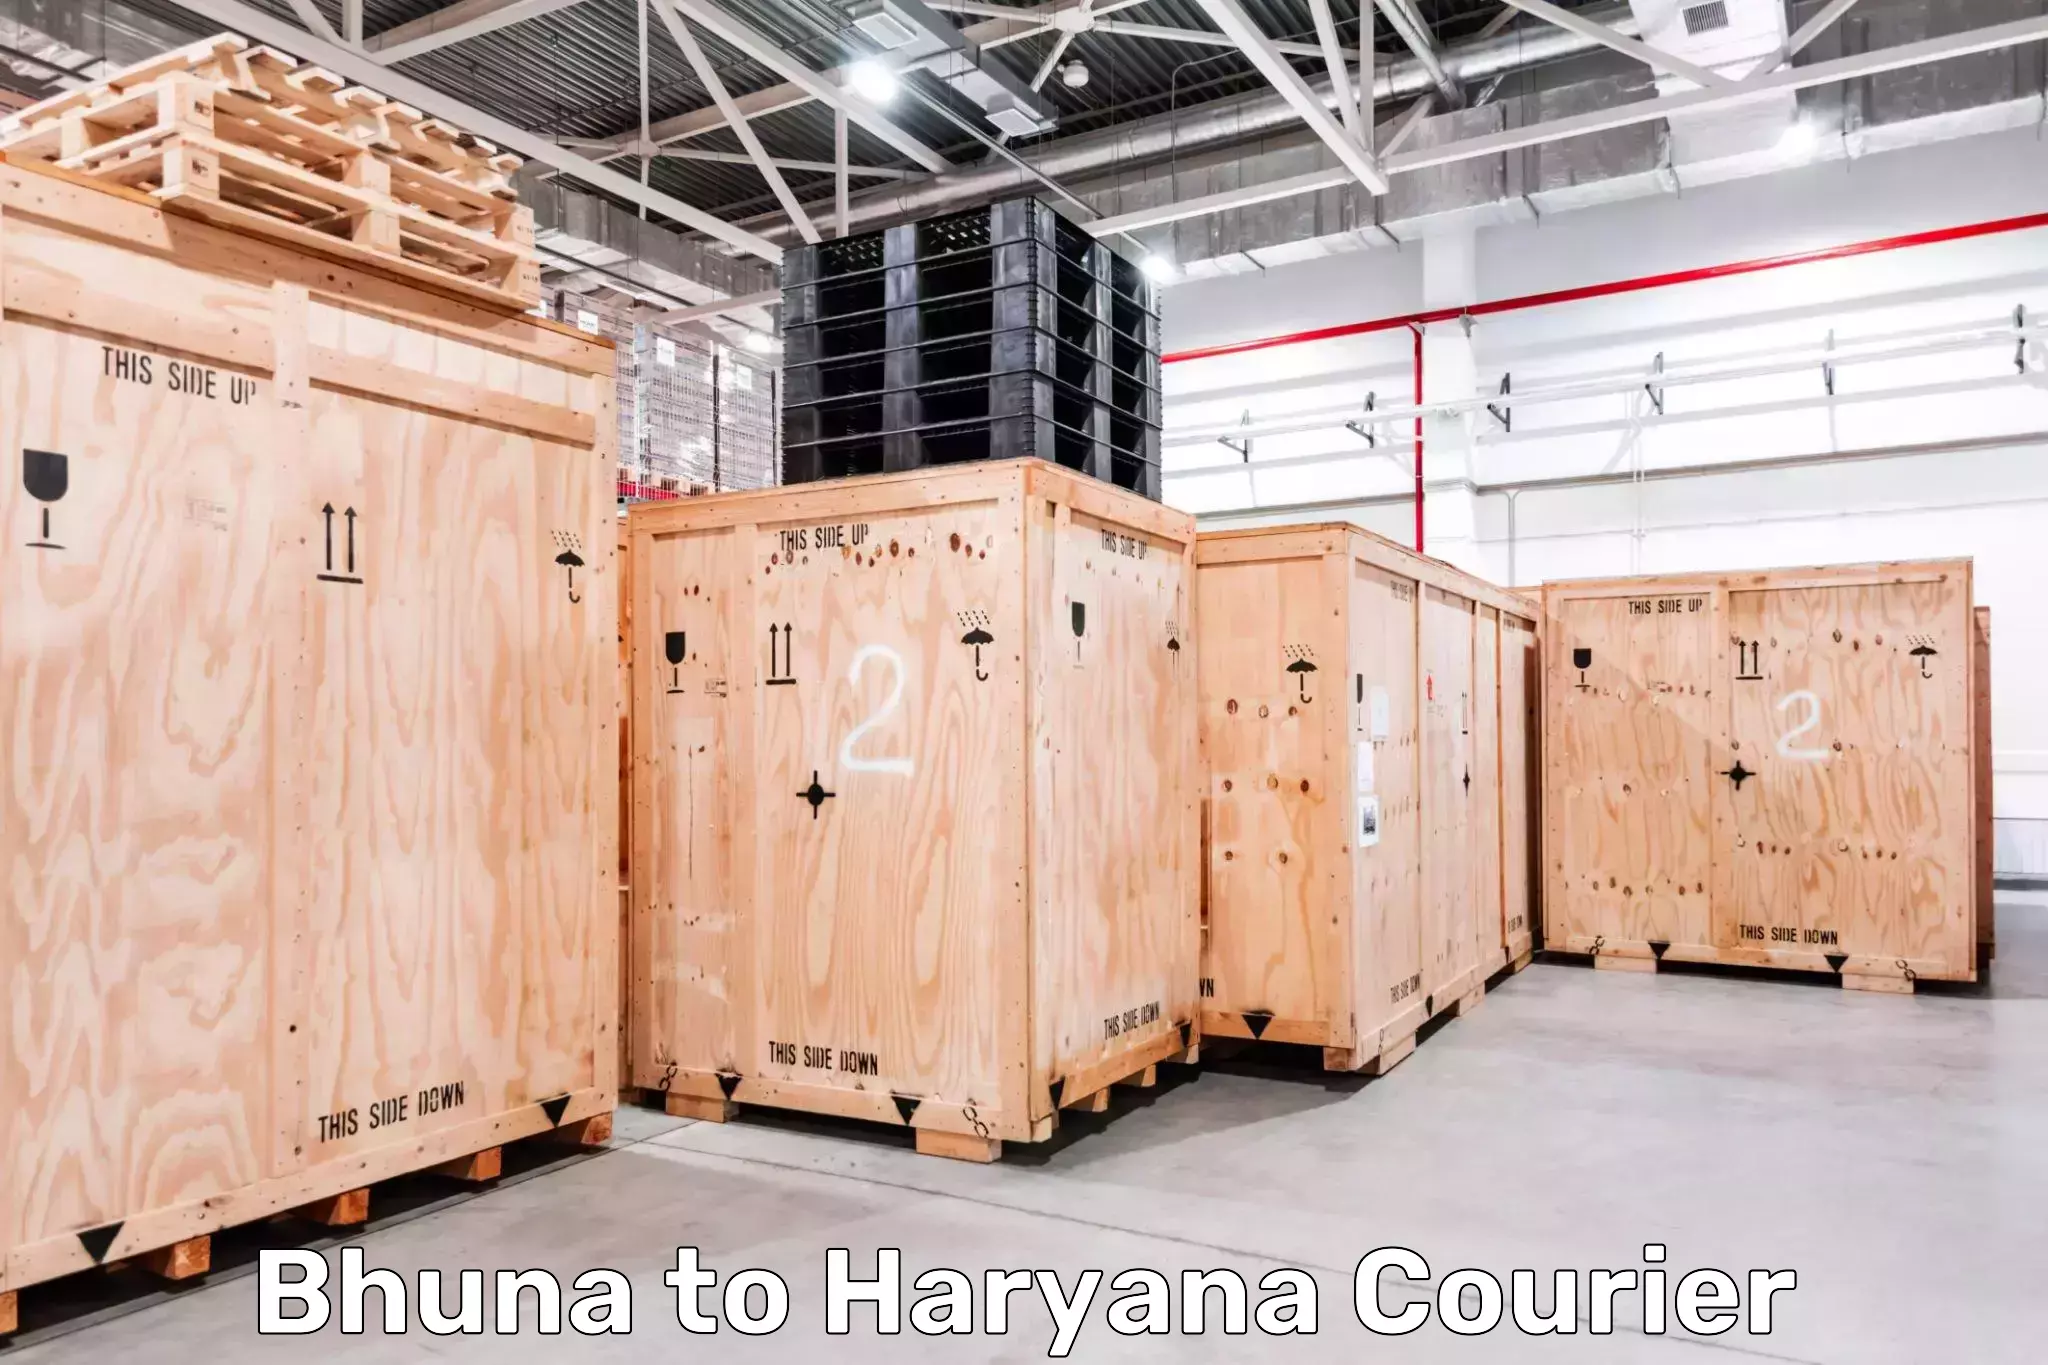 Door-to-door freight service Bhuna to Haryana